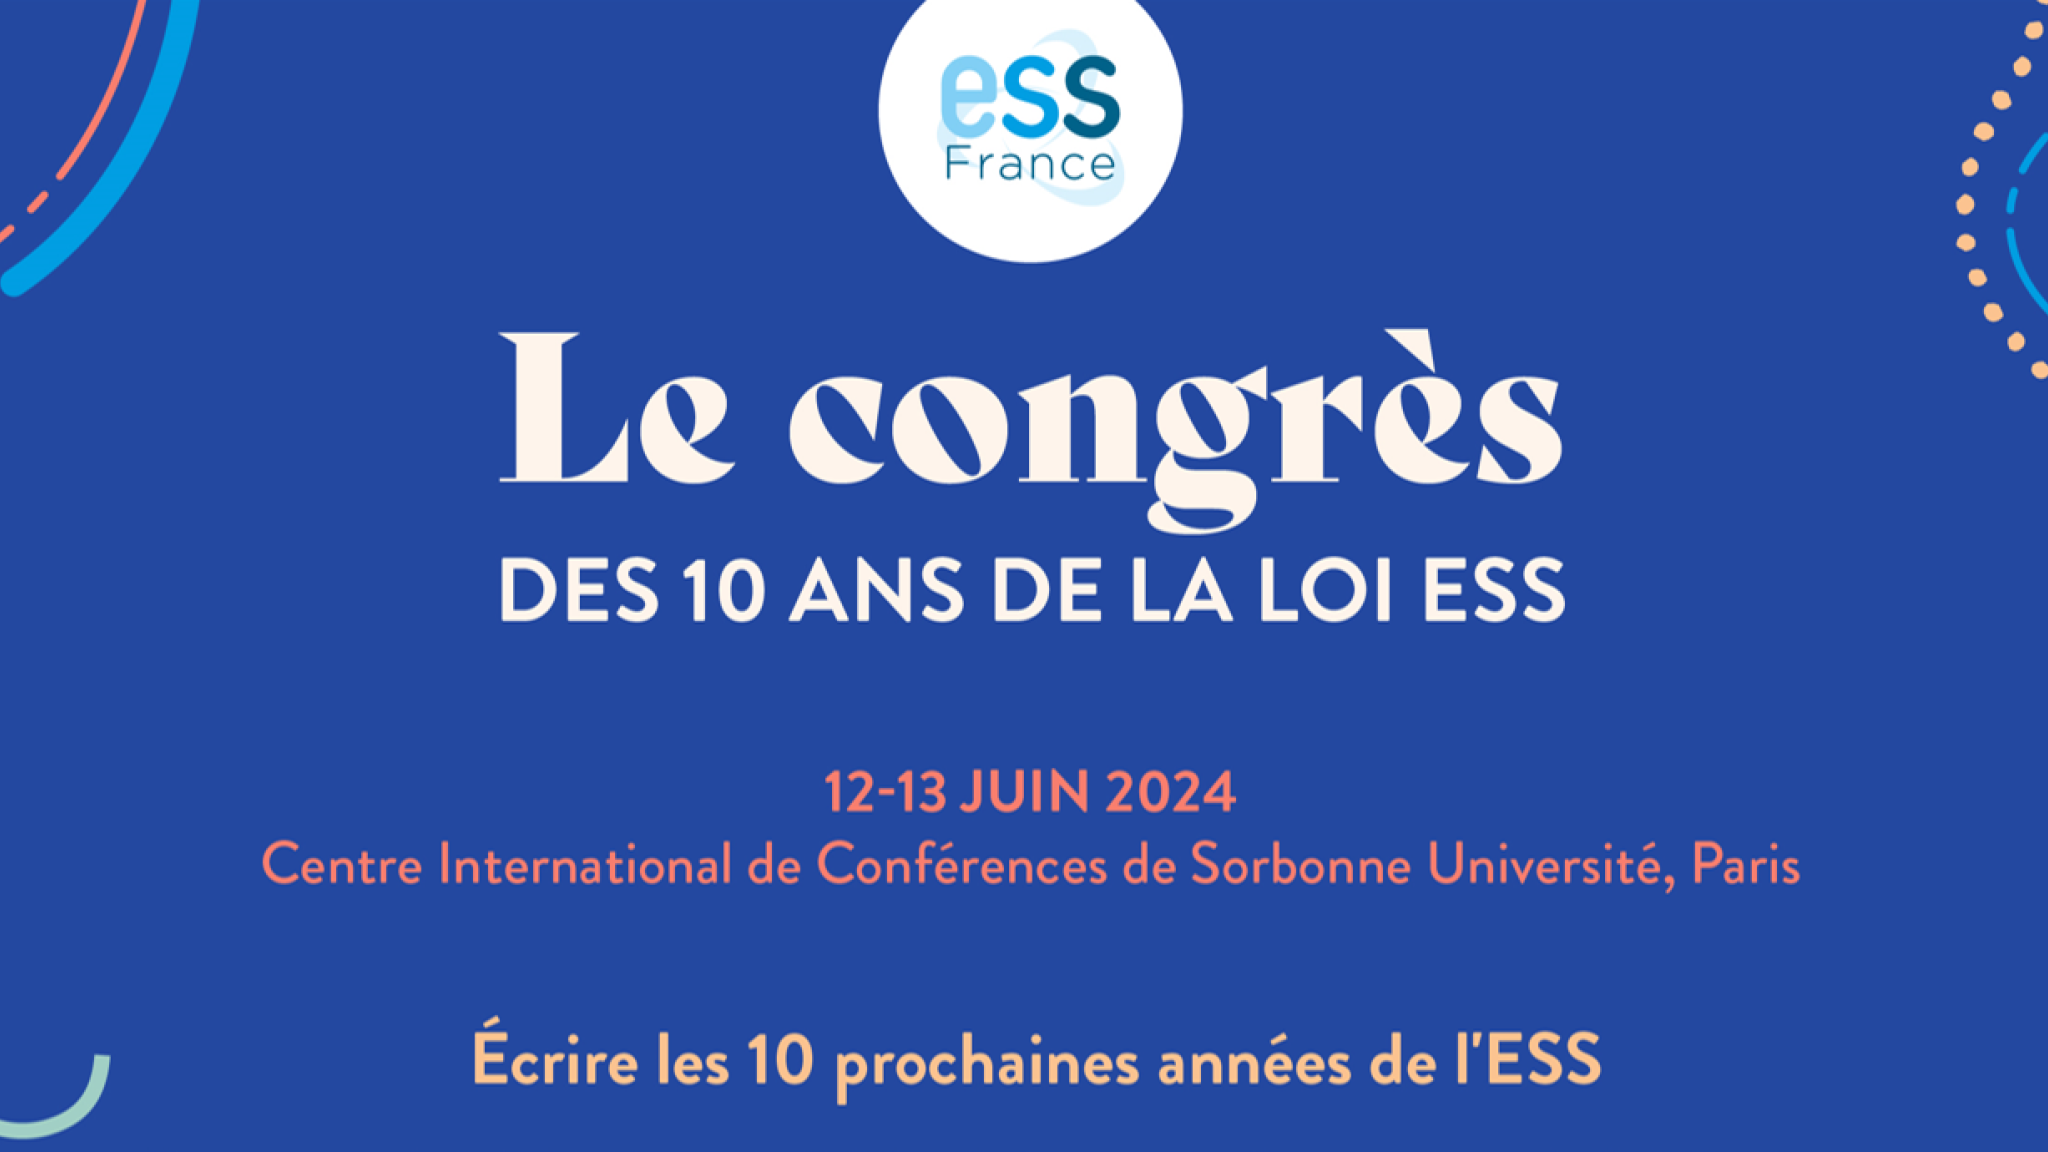 Congrès des 10 ans de la loi ESS : écrire les 10 prochaines années de l'ESS les 12 et 13 juin 2024 à Paris